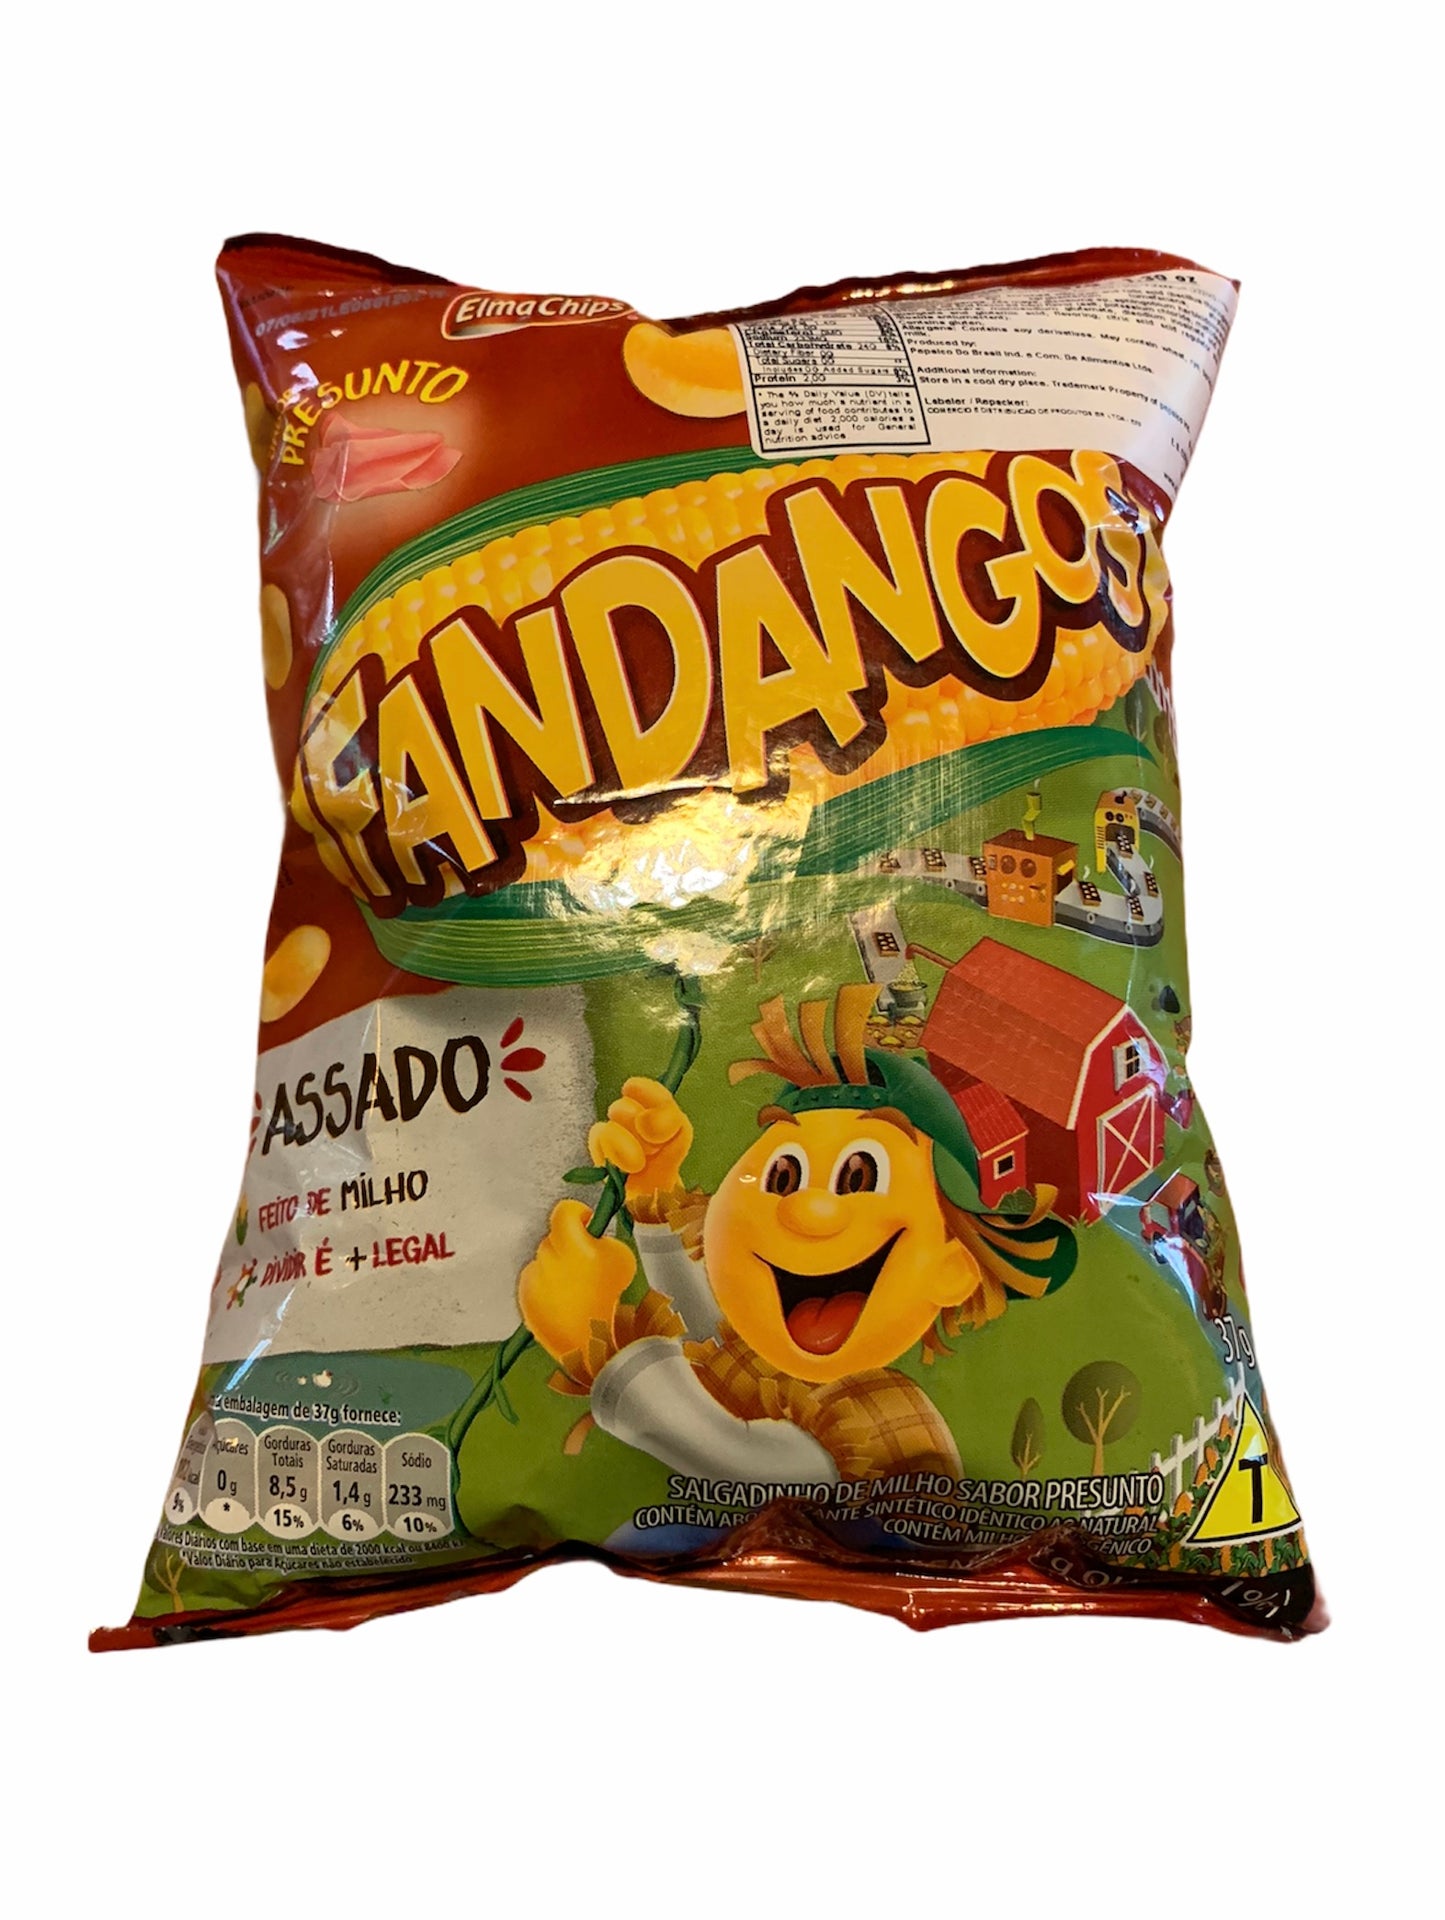 Fandangos Corn Chips  | Fandangos